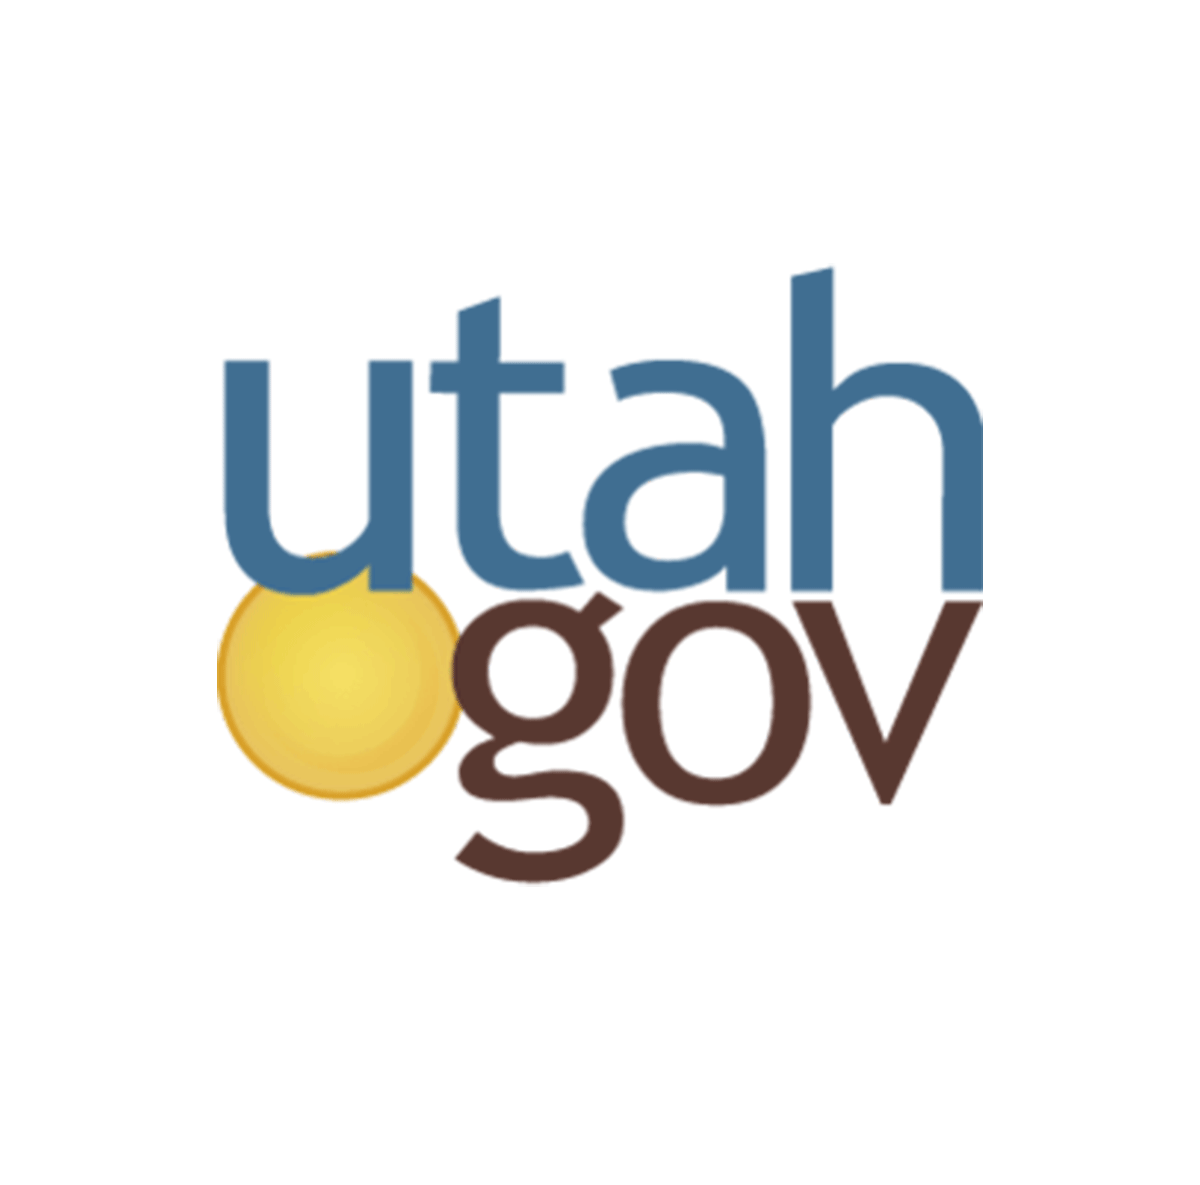 State of Utah